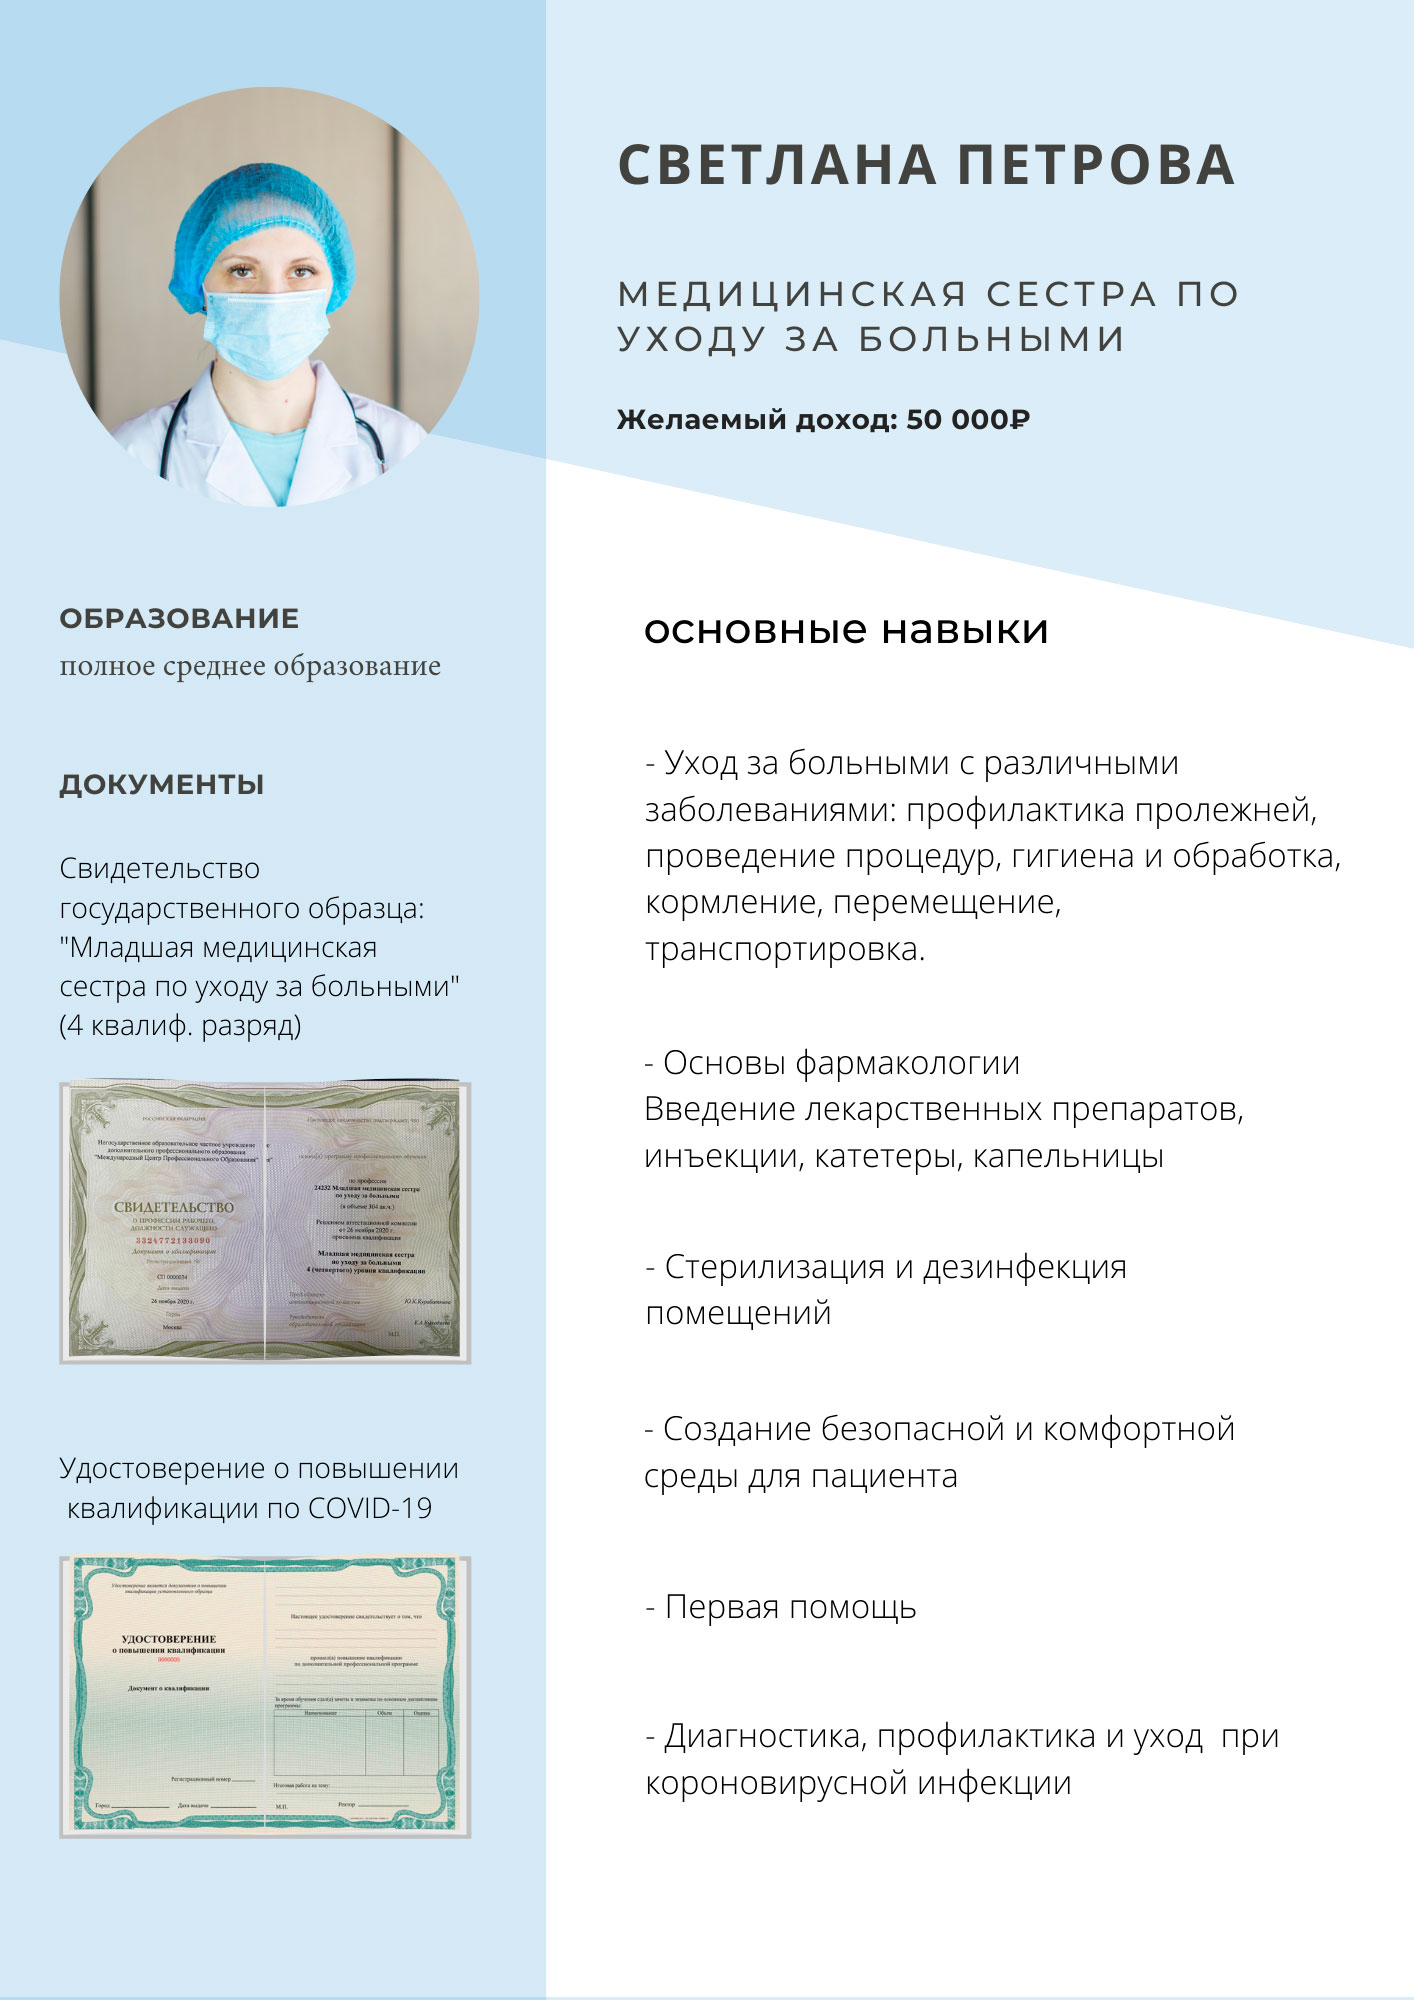 Получить сертификат младшей медицинской